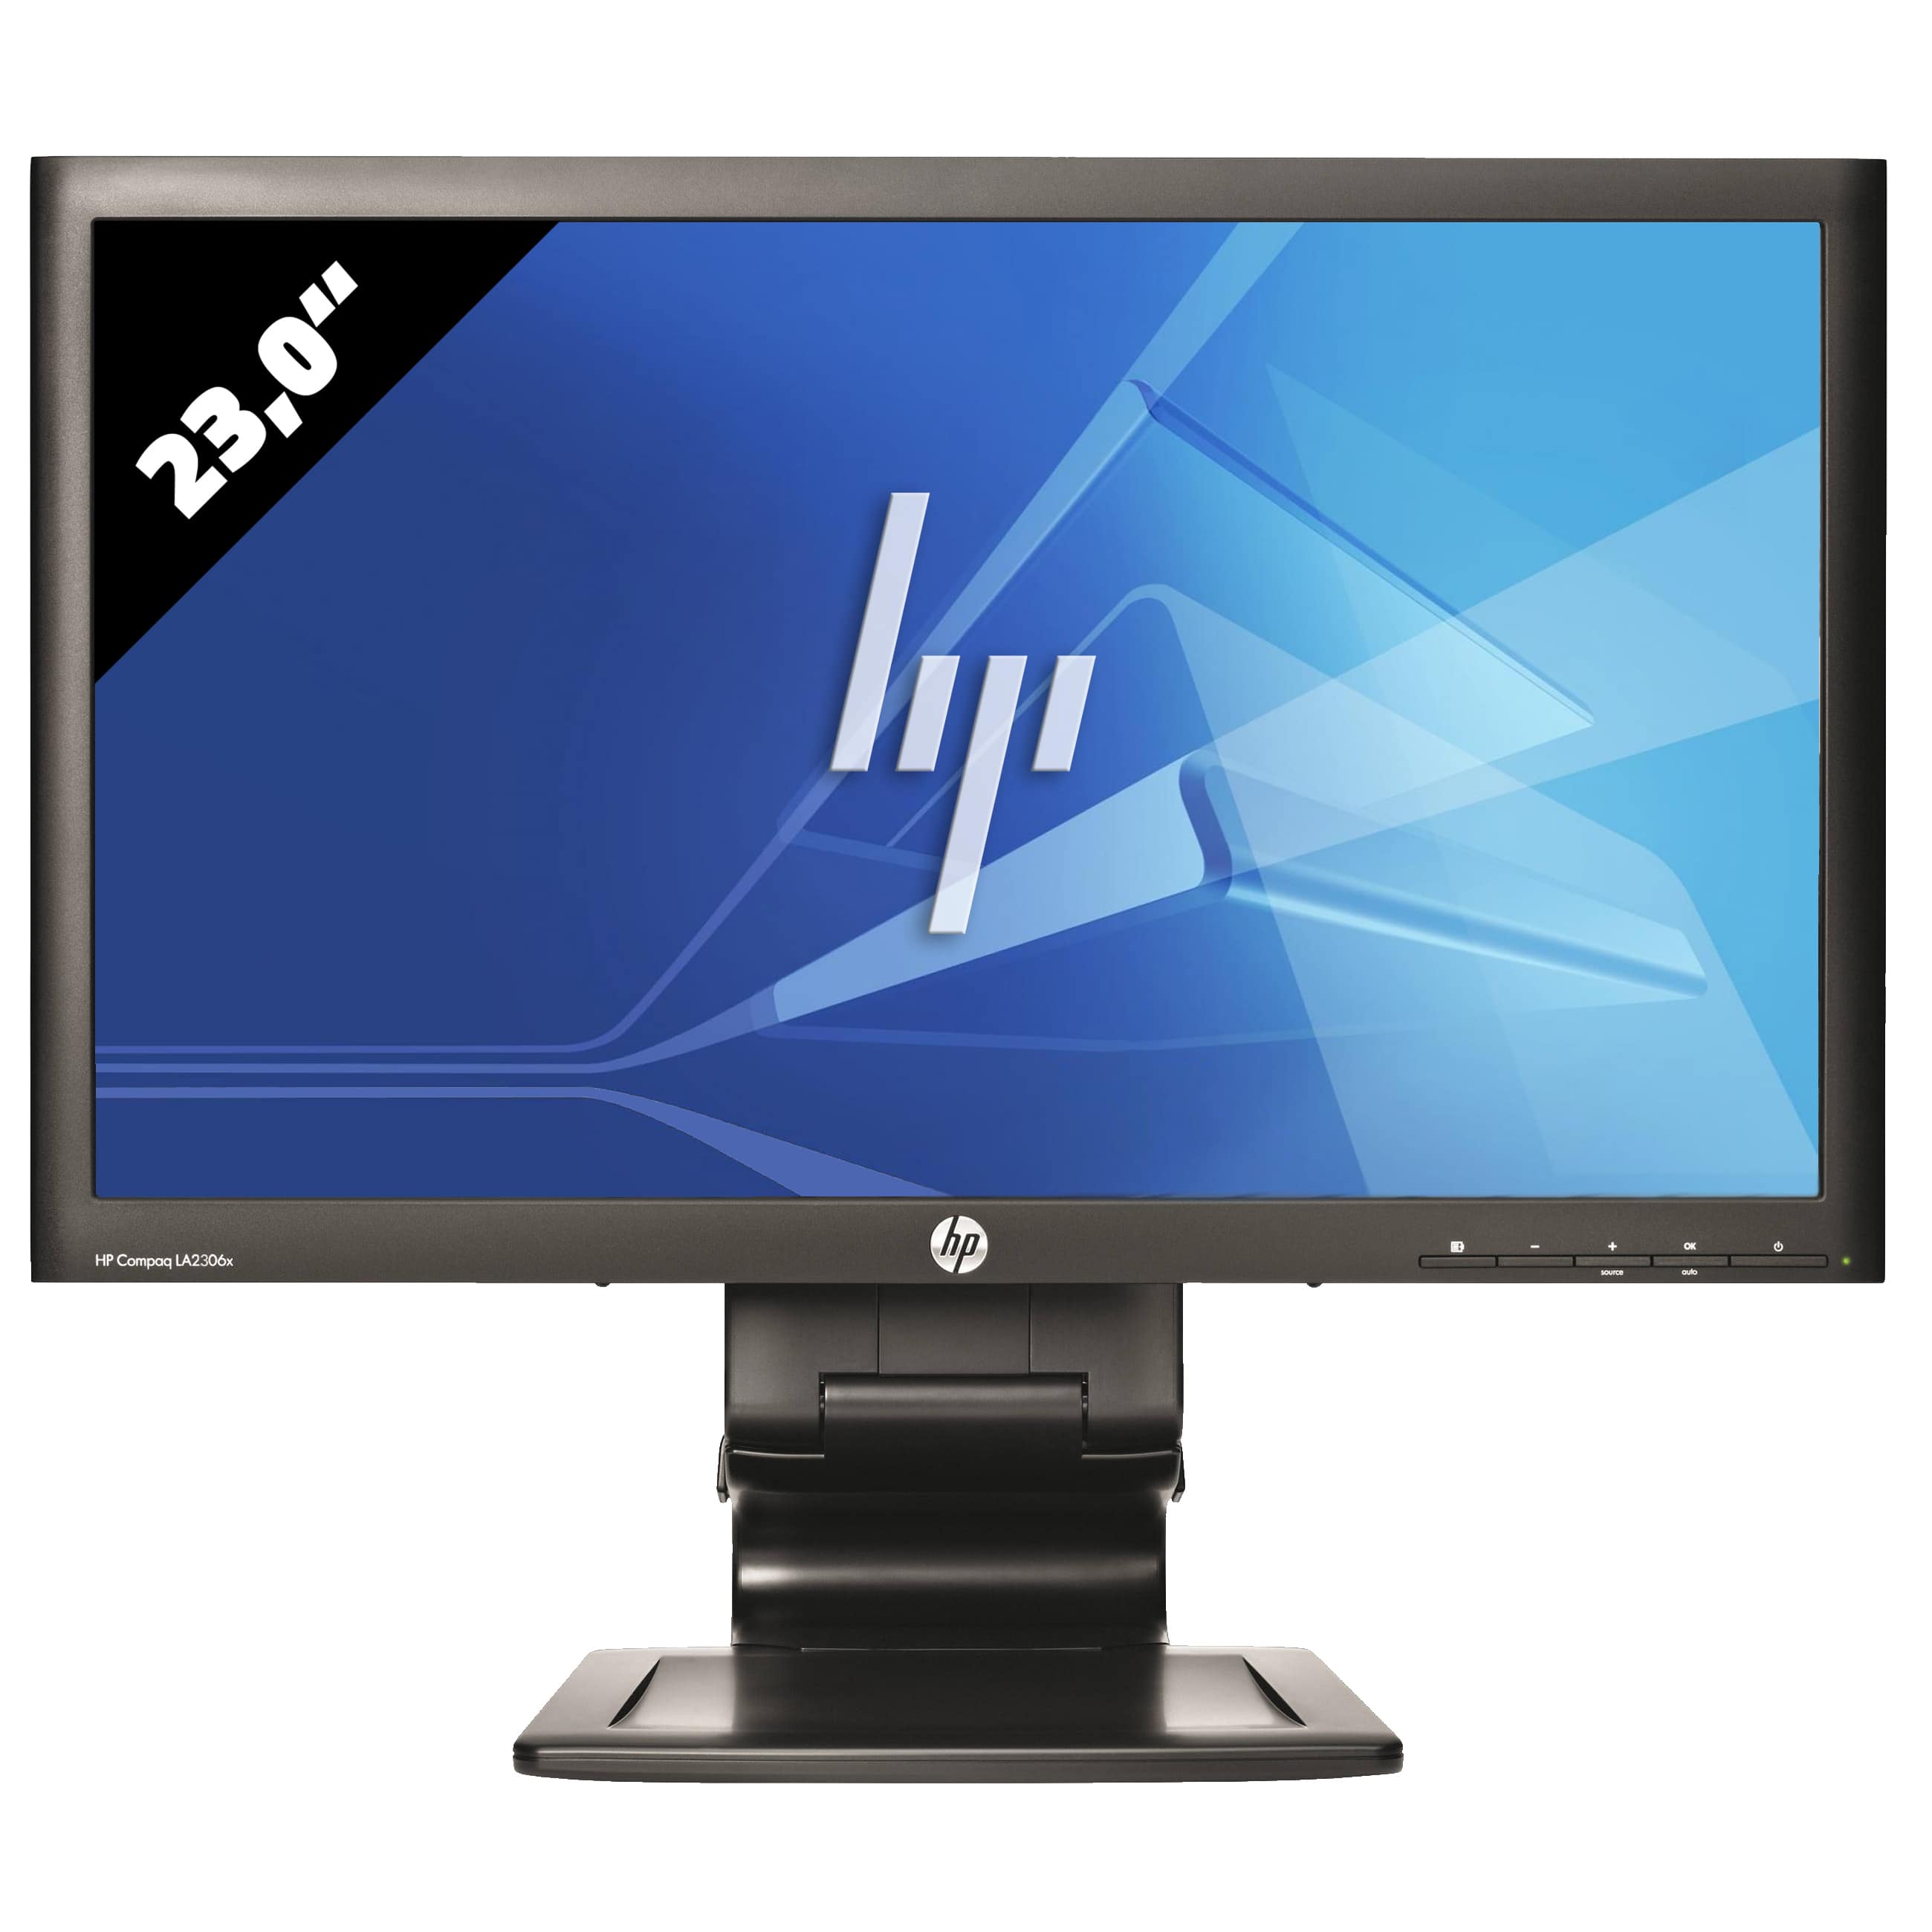 HP LA 2306x - 1920 x 1080 - FHD